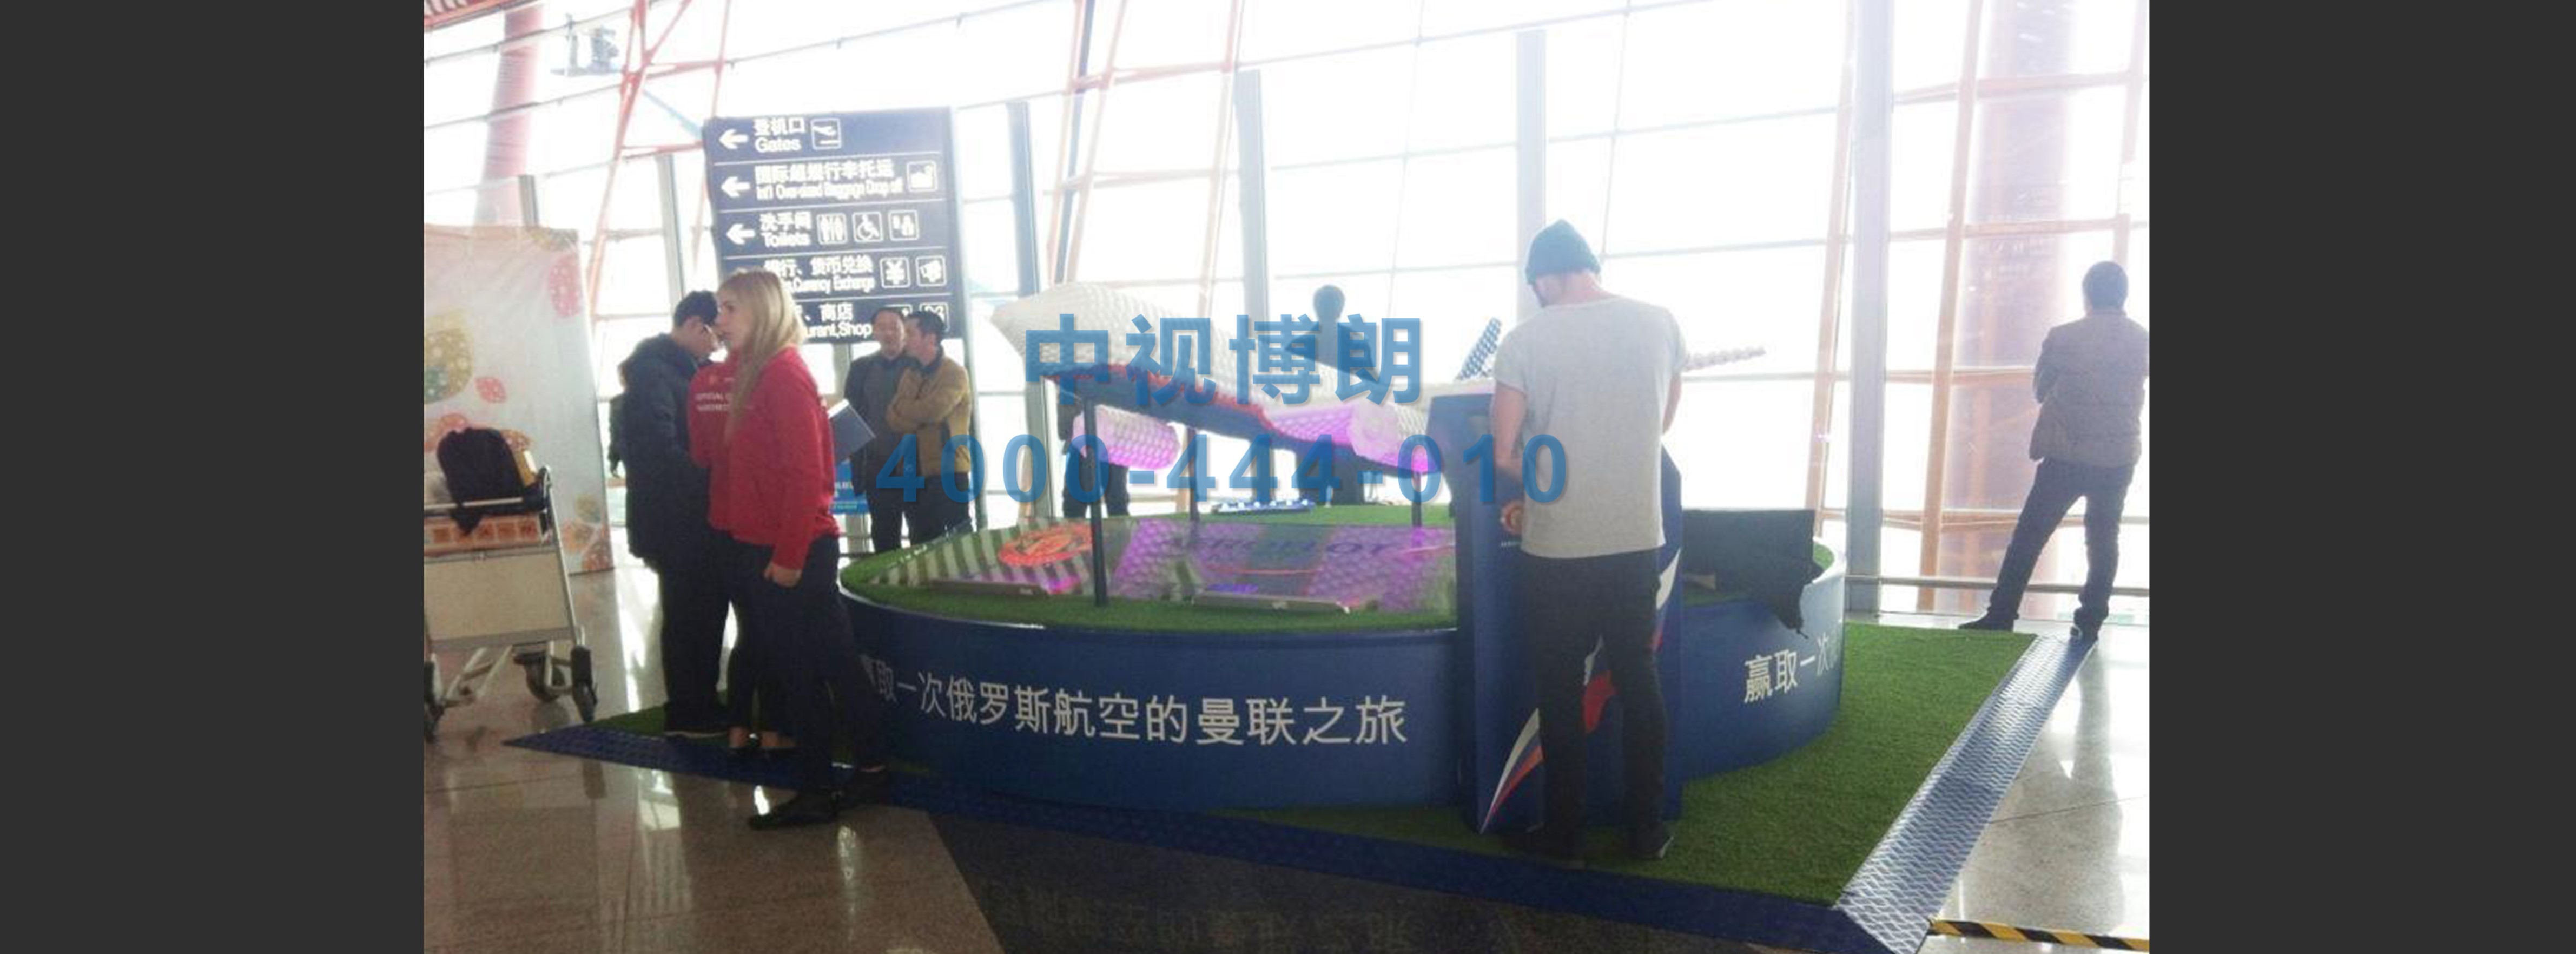 北京首都机场广告-T3出发办票大厅实物展位W004